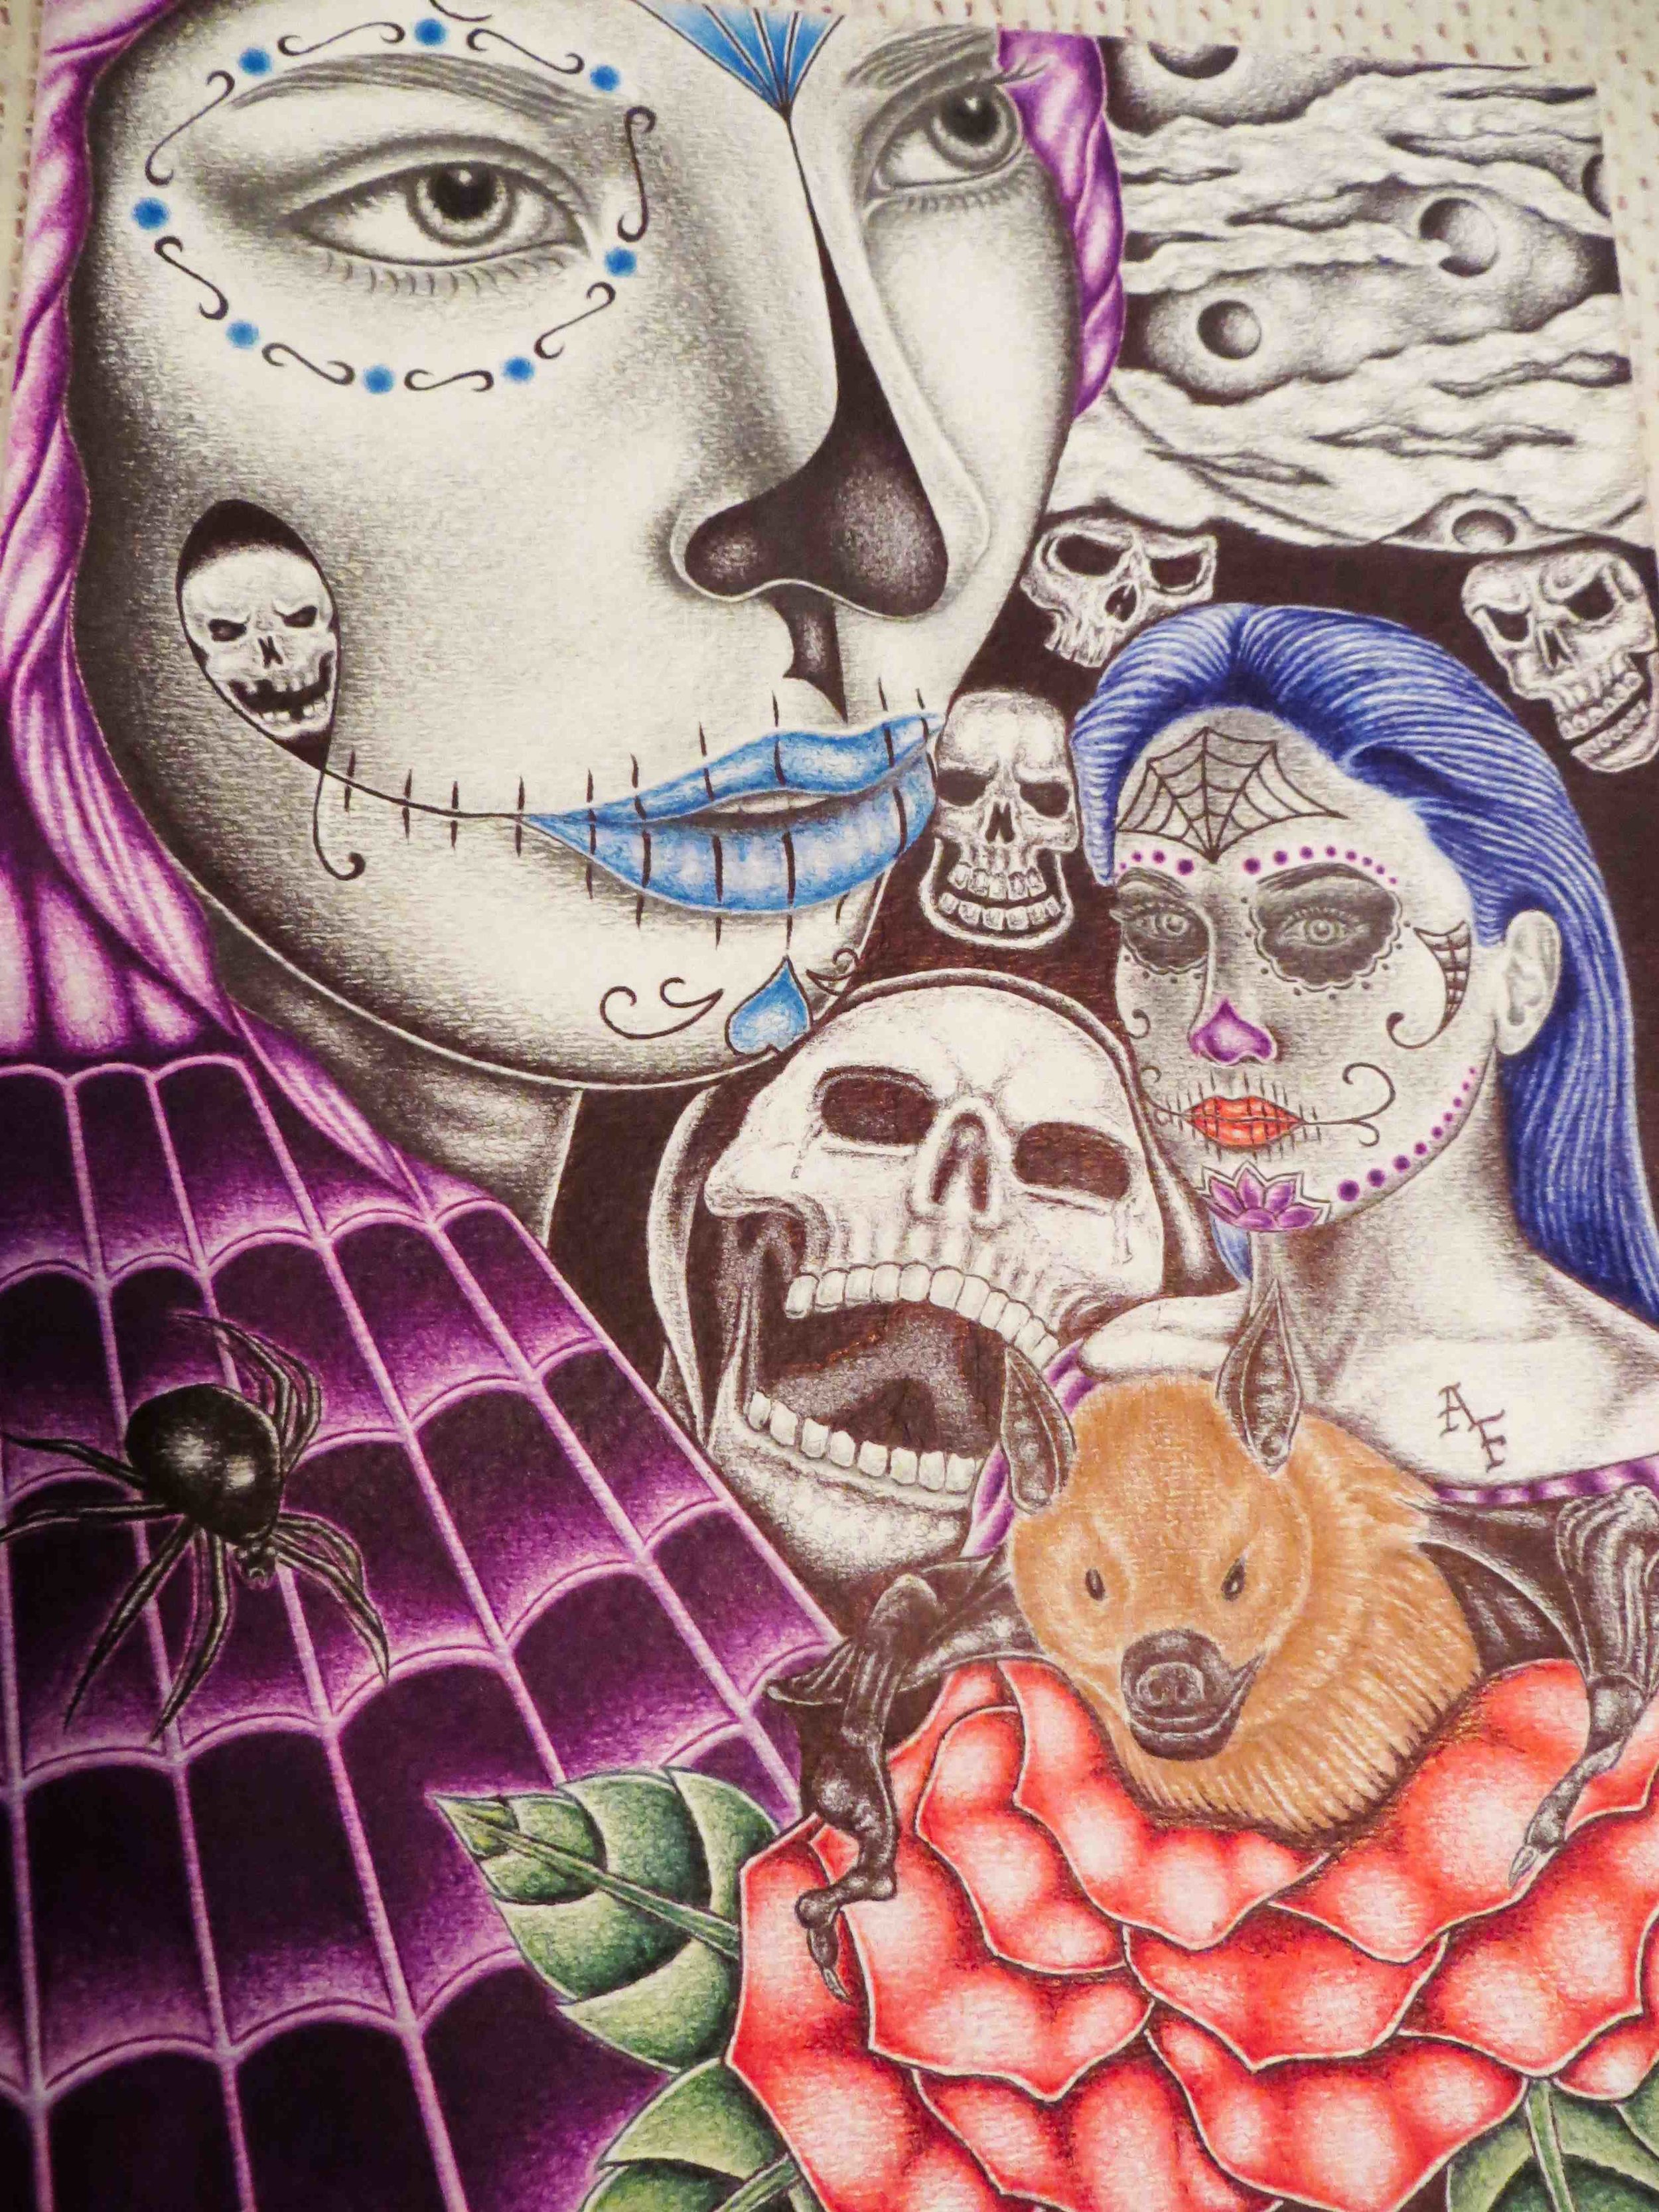  Happy Halloween/Dios de la Muerte color pen drawing 9x12 by Adam Flores